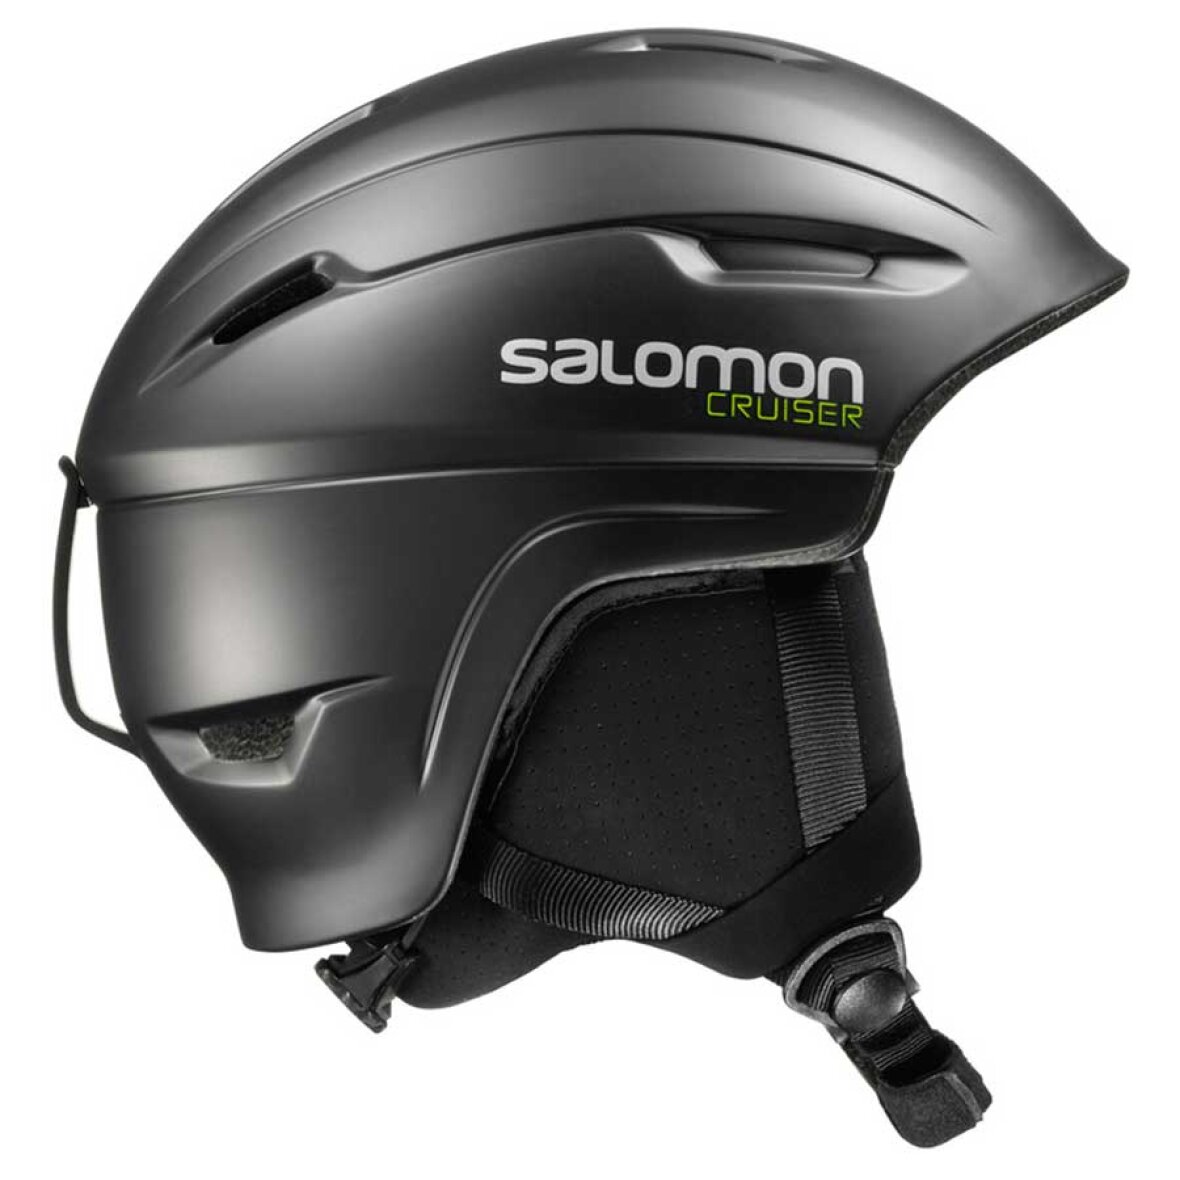 SKI - Salomon - Skihjelm Cruiser 4D Black fra Salomon